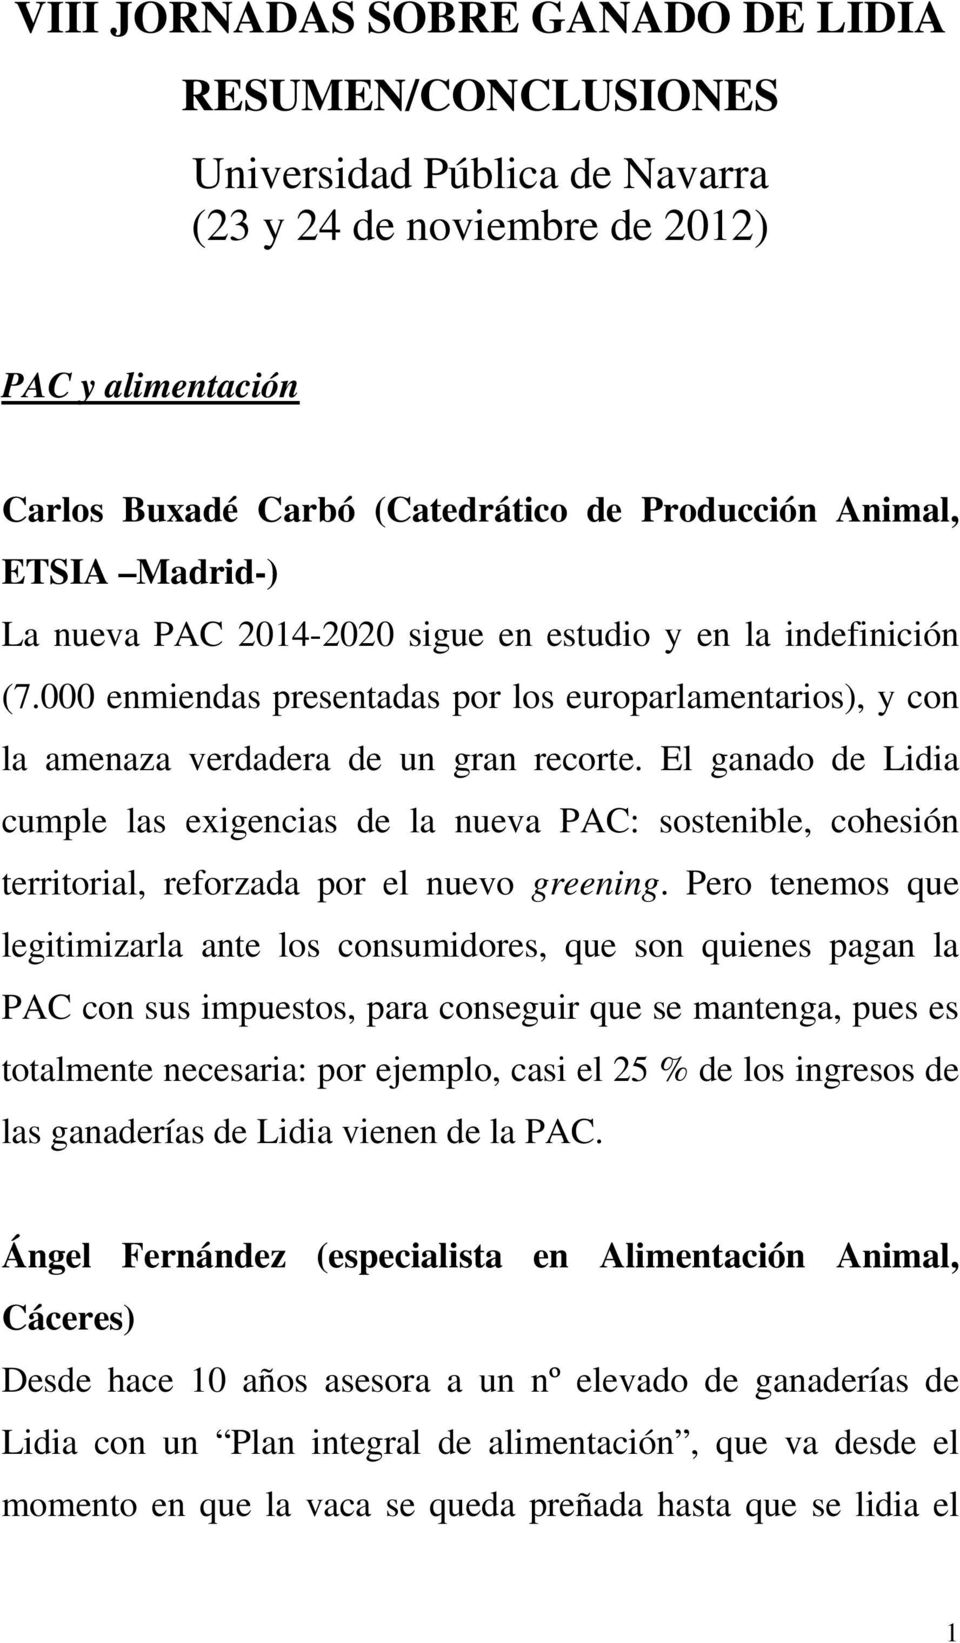 El ganado de Lidia cumple las exigencias de la nueva PAC: sostenible, cohesión territorial, reforzada por el nuevo greening.